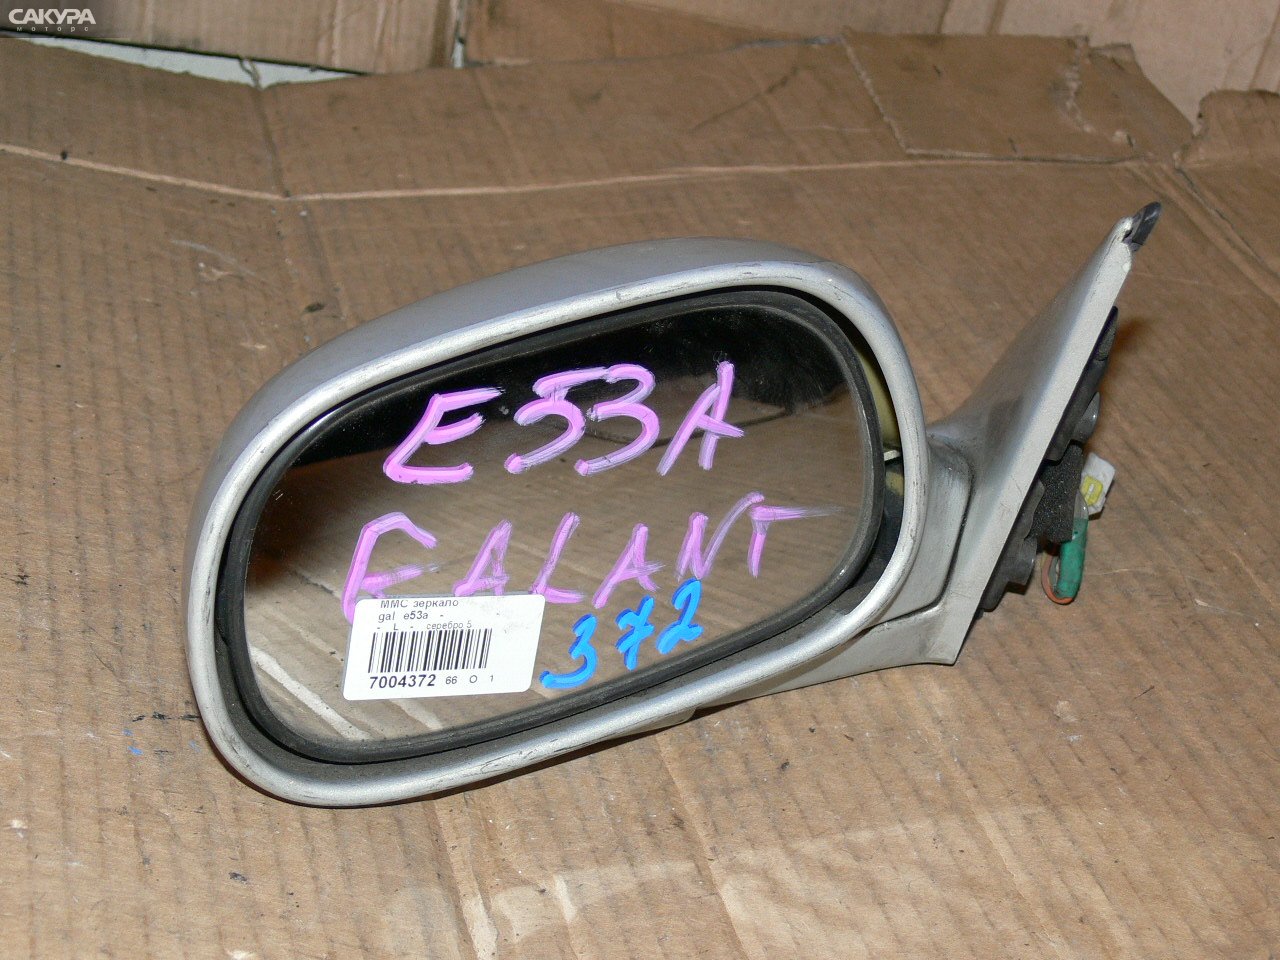 Зеркало боковое левое Mitsubishi Galant E53A: купить в Сакура Иркутск.